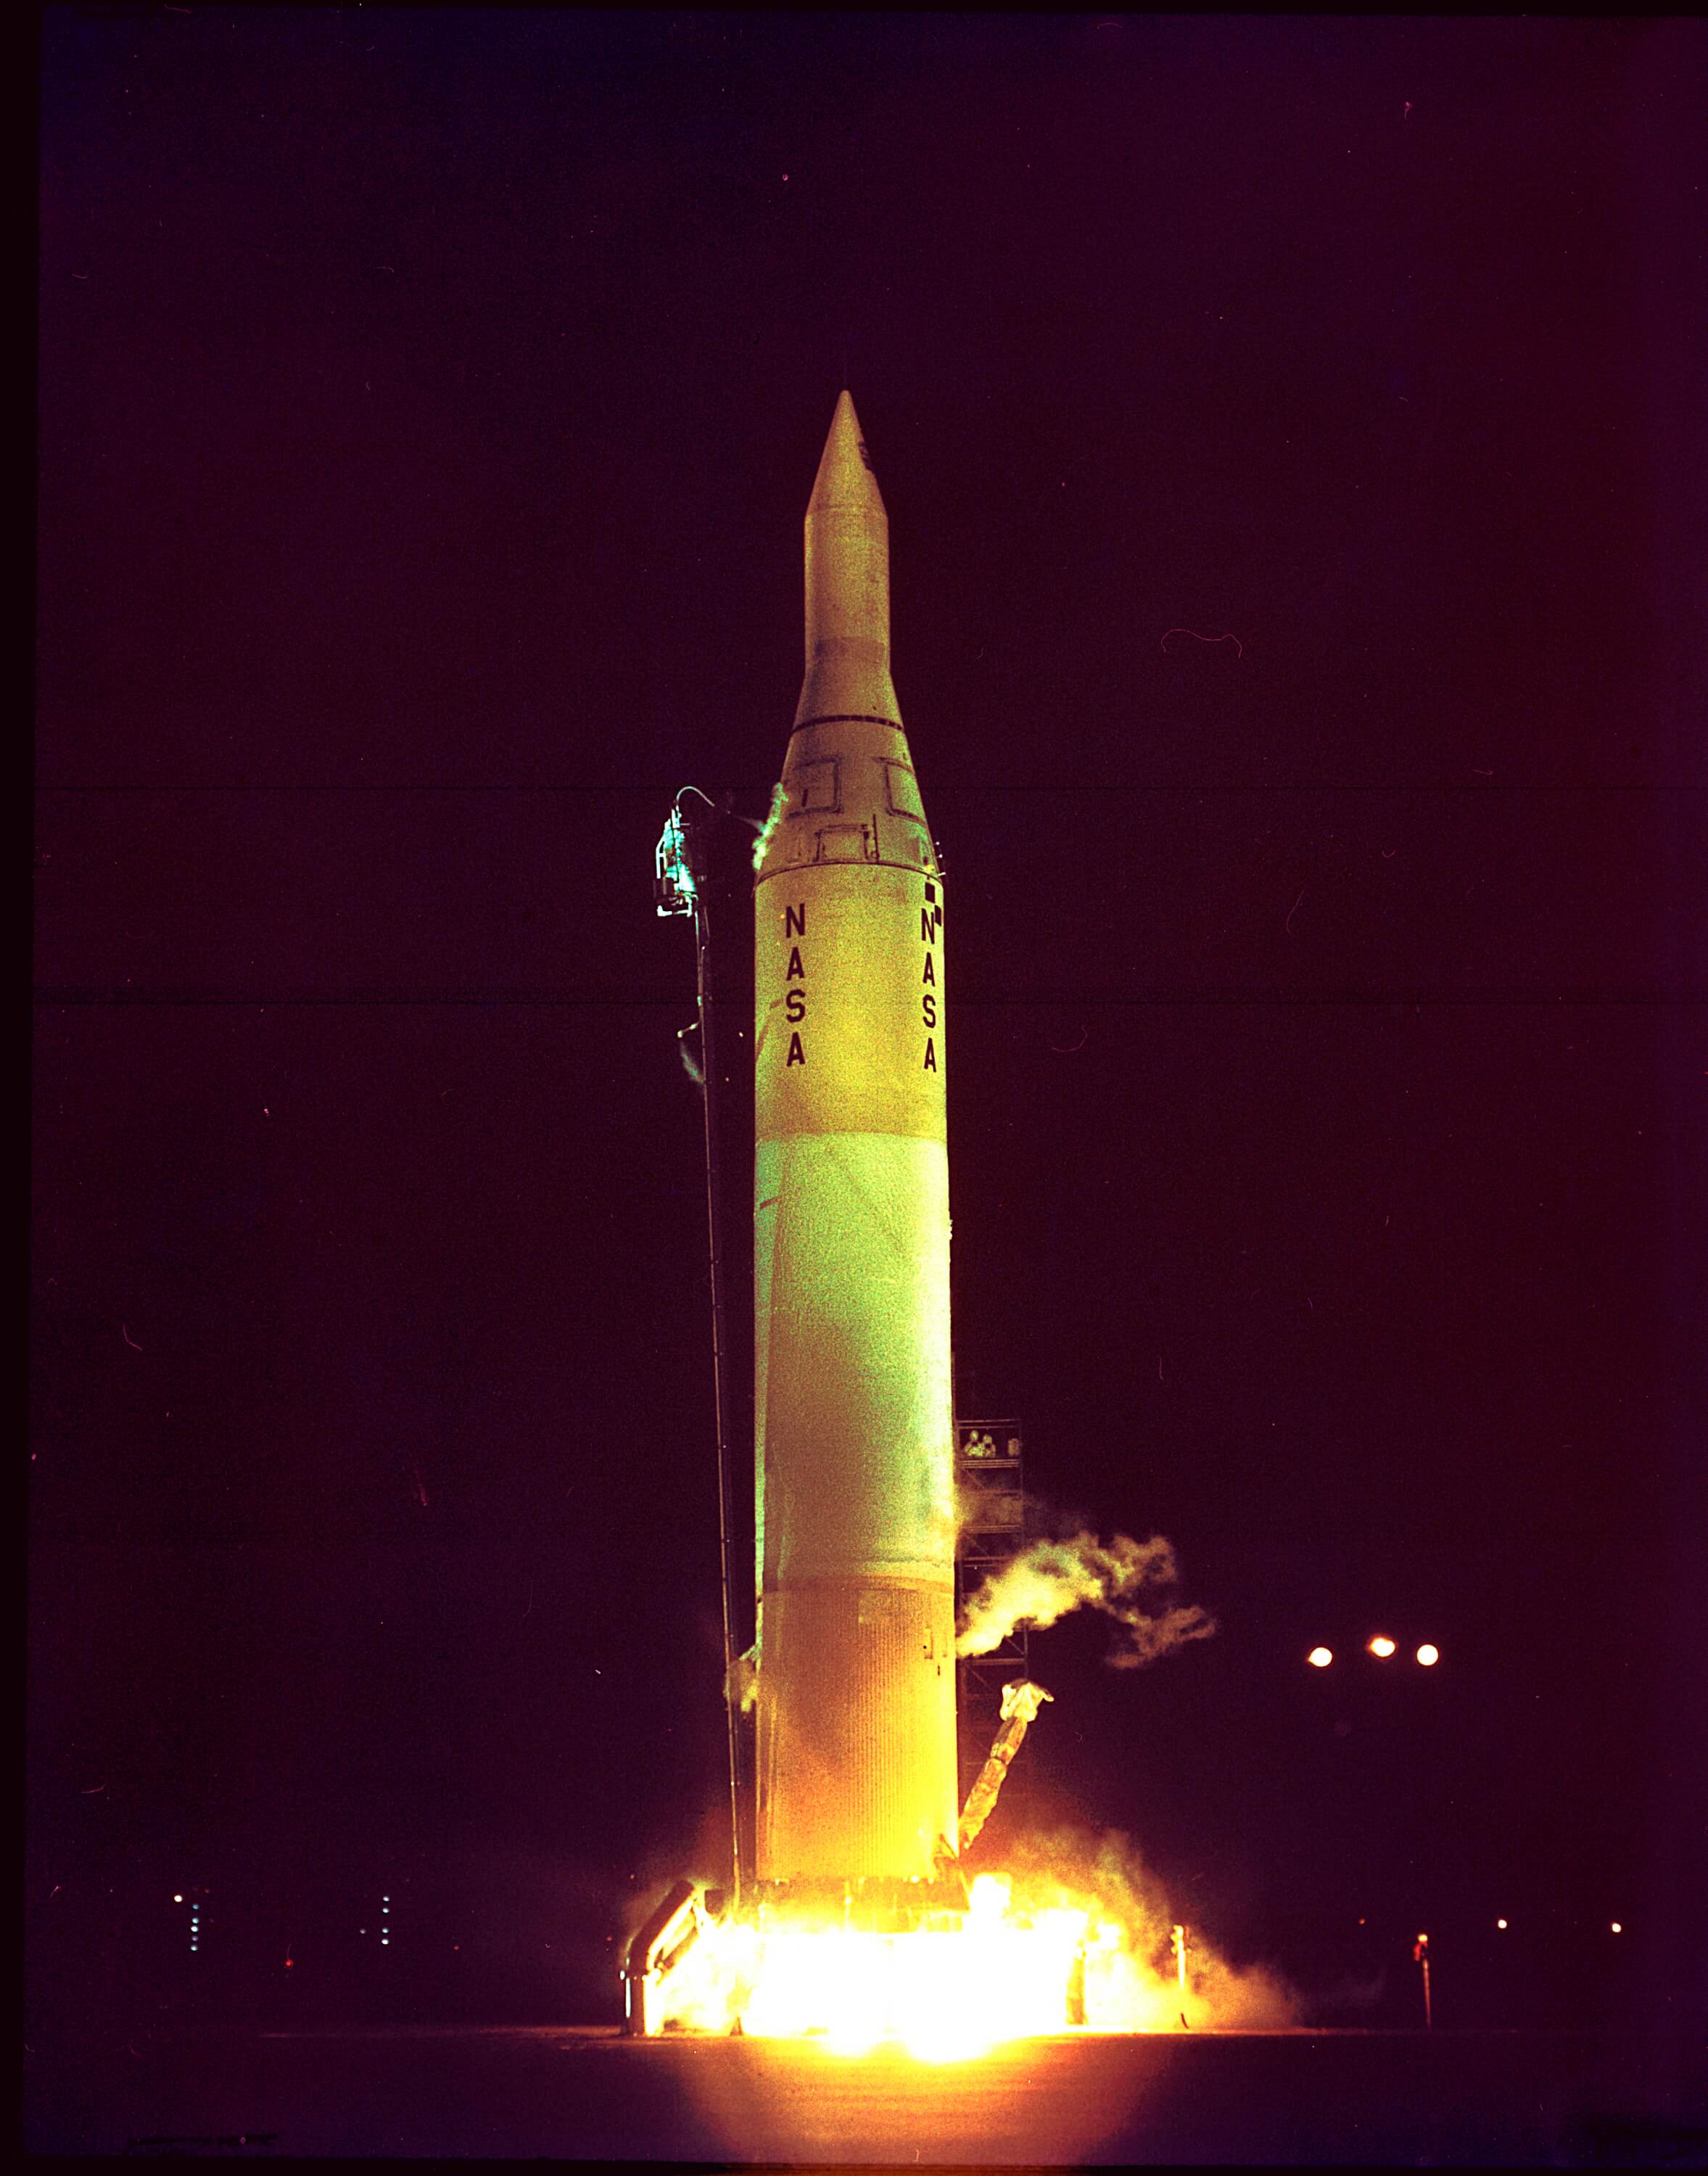 שיגור החללית פיוניר 4 על גבי טיל ג'ונו 2, כף קנוורל, 3/3/59. צילום: נאס"א